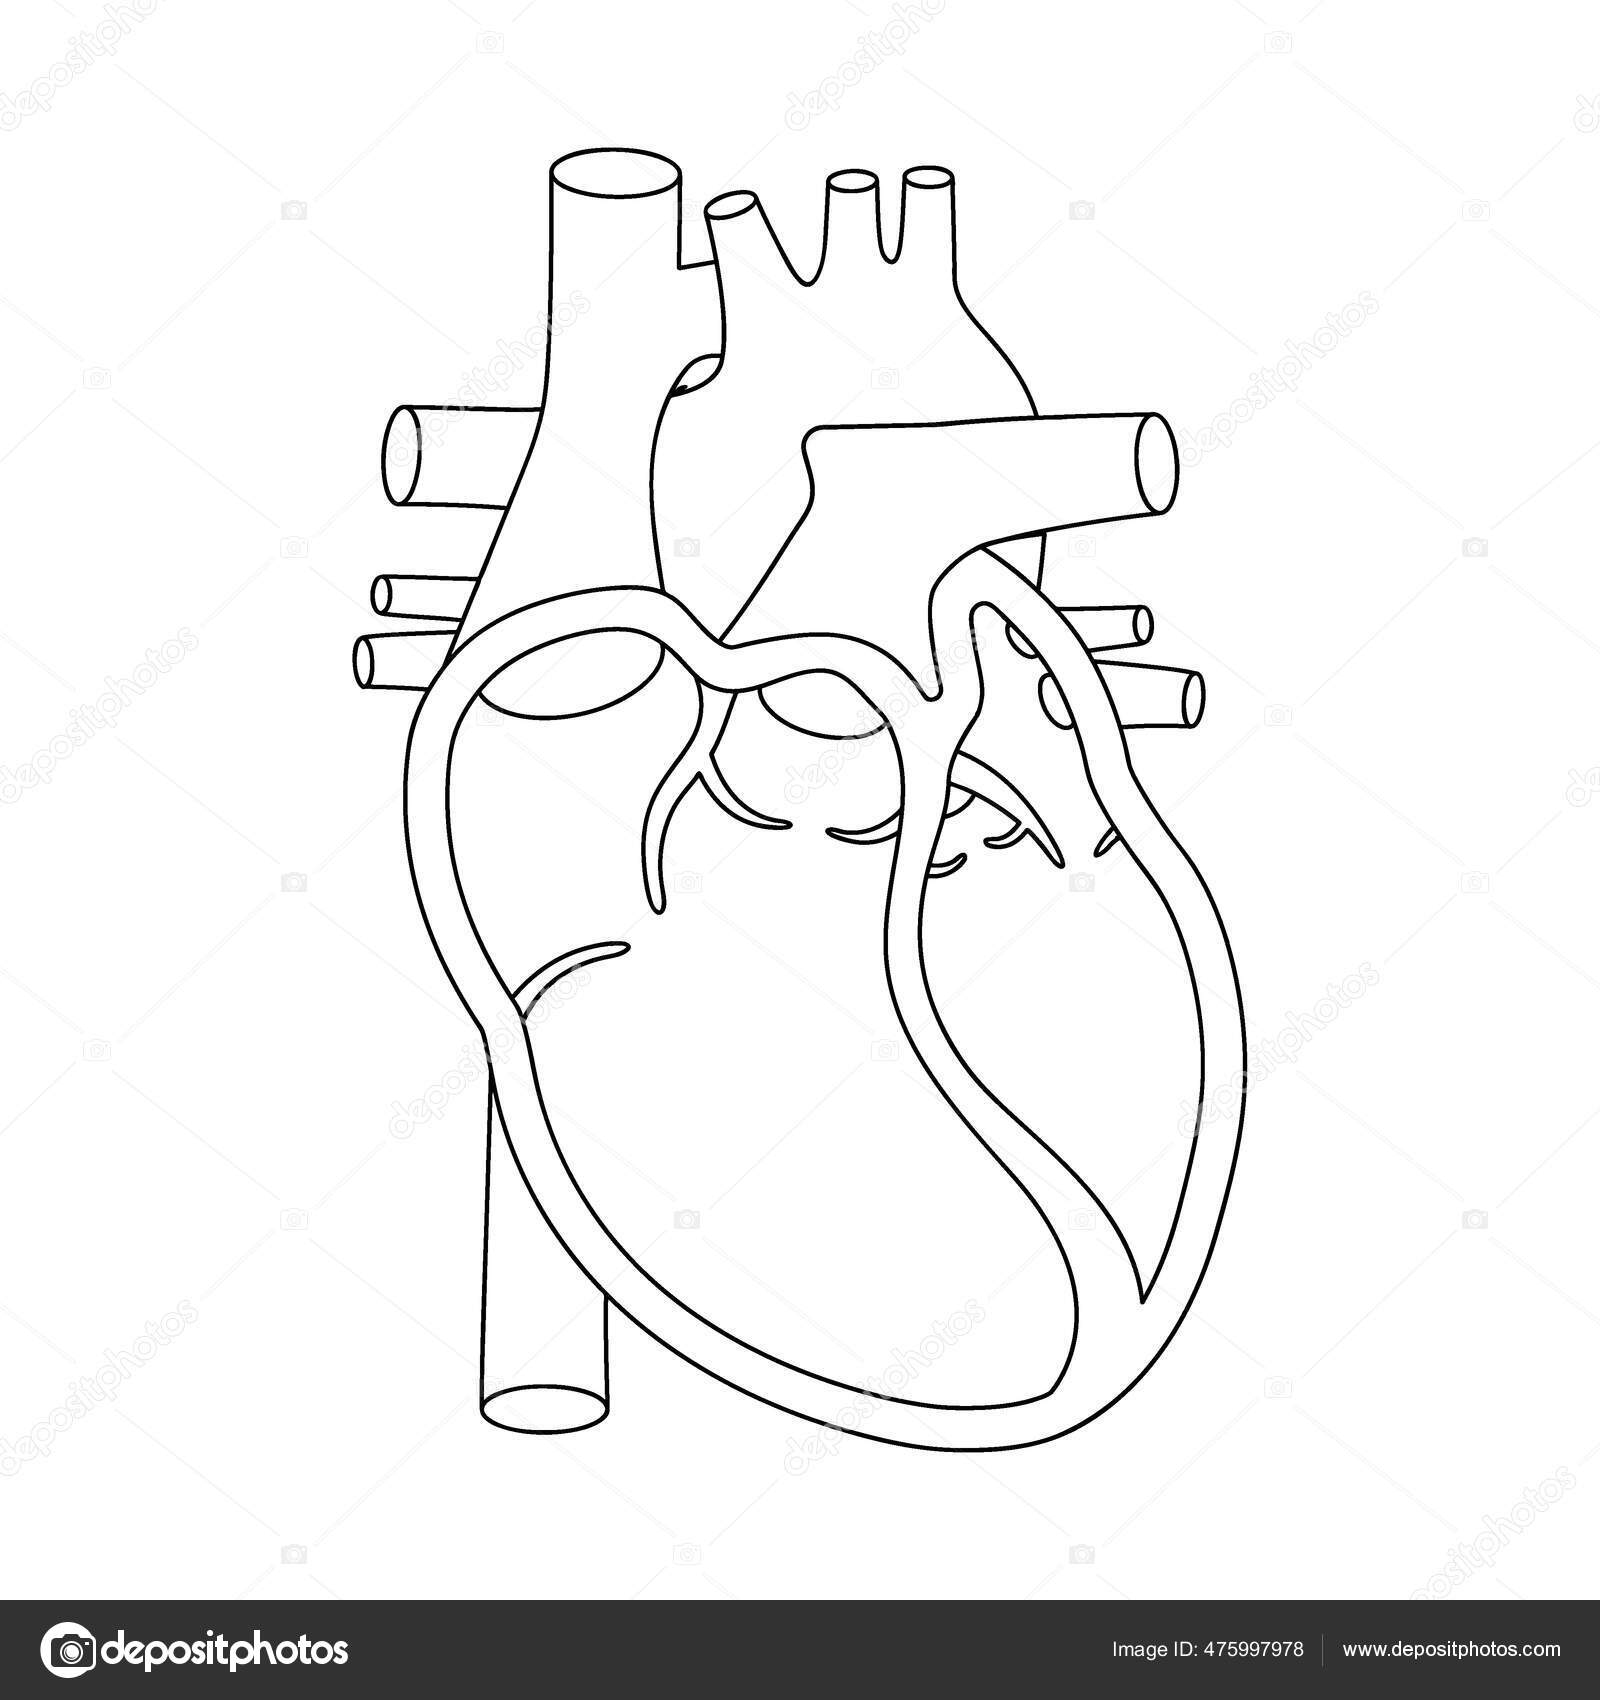 人間のハートイラスト。断面図で解剖学的に正しい心臓. — ストックベクター ©lifeking83 475997978